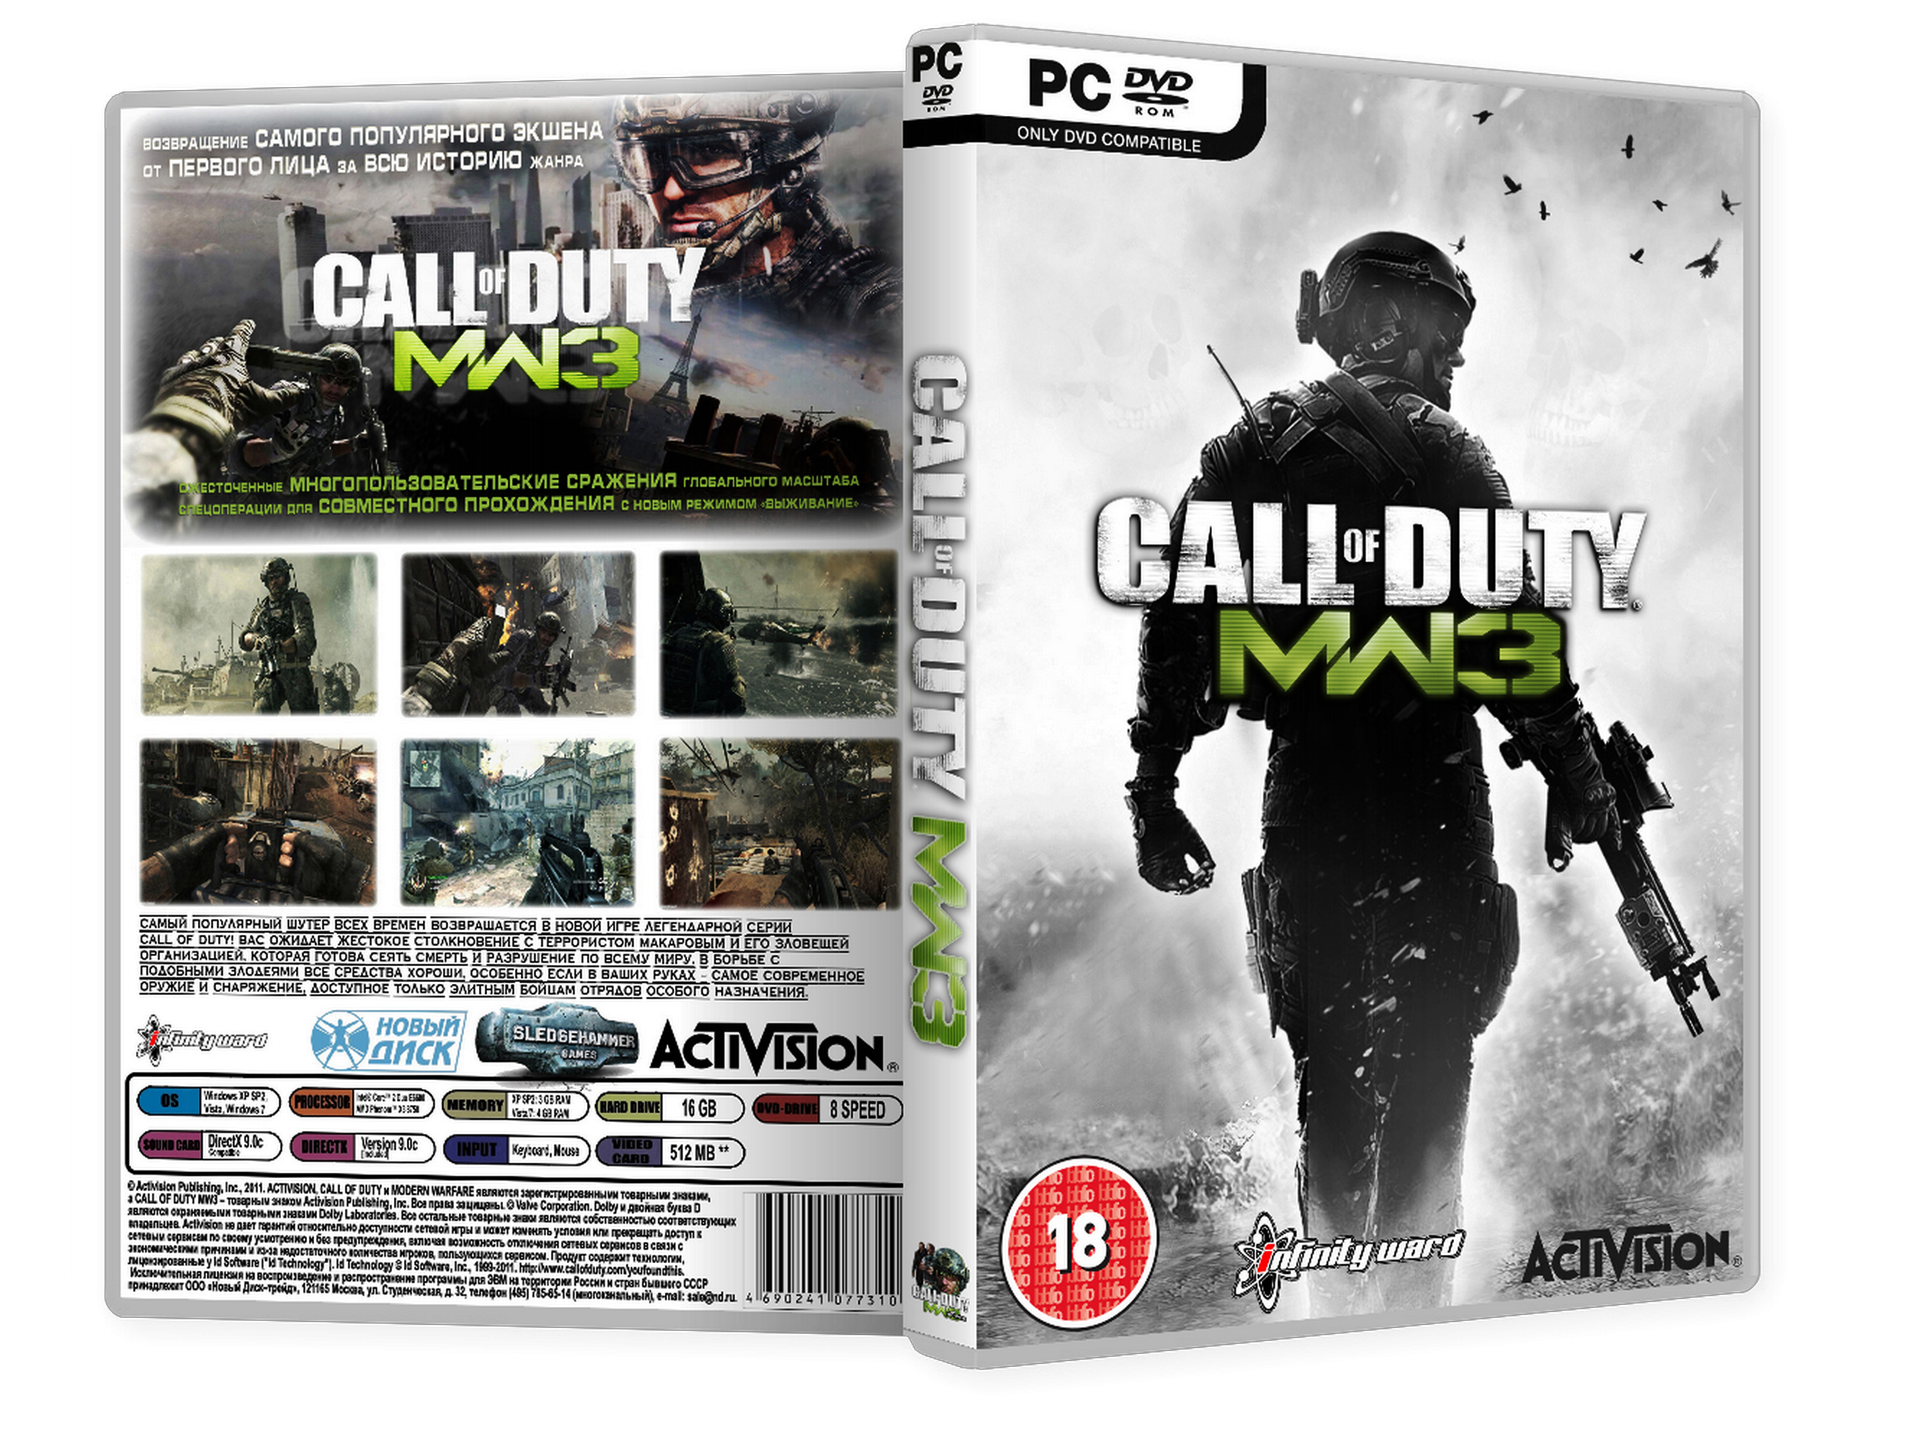 Игра call of duty последняя версия. Кал оф дьюти диск. Call of Duty Modern Warfare 3 диск. Модерн варфаер 3 диск. Call of Duty: Modern Warfare 3 (2011) PC.